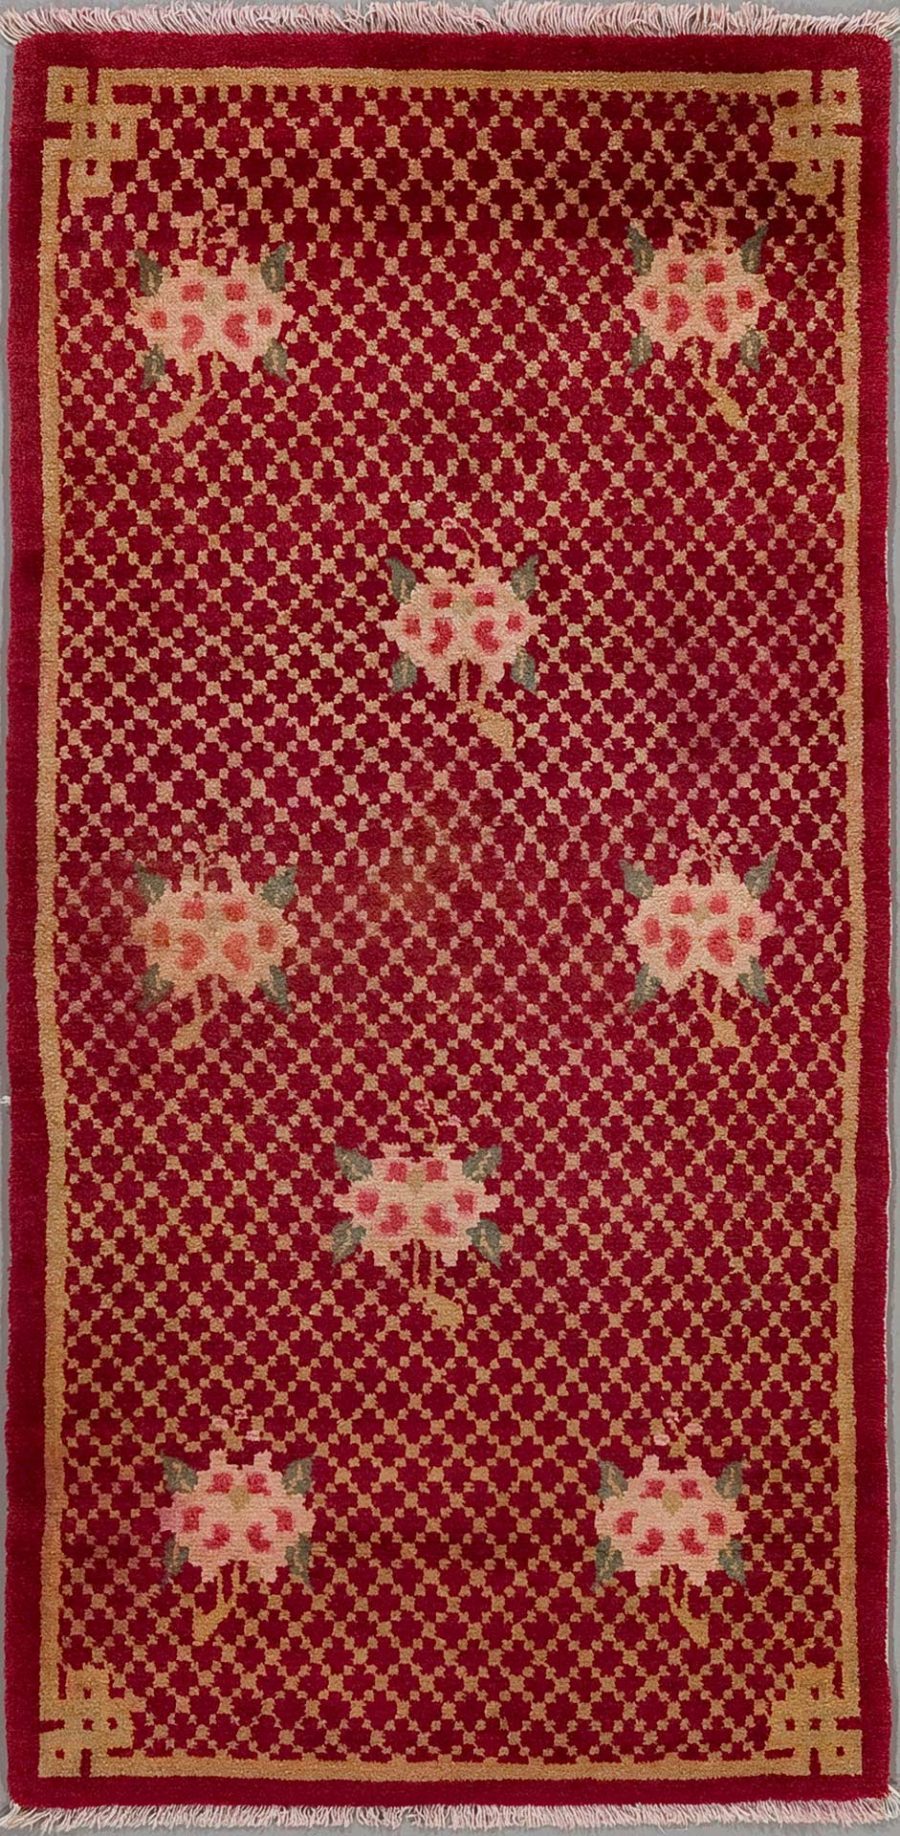 Langlicher, orientalischer Teppich mit rotem Hintergrund und kleinen wiederholenden Mustern; mit größeren, floralen Motiven und einer einfachen Bordüre in Beige und Weinrot. Fransen an den schmalen Enden.